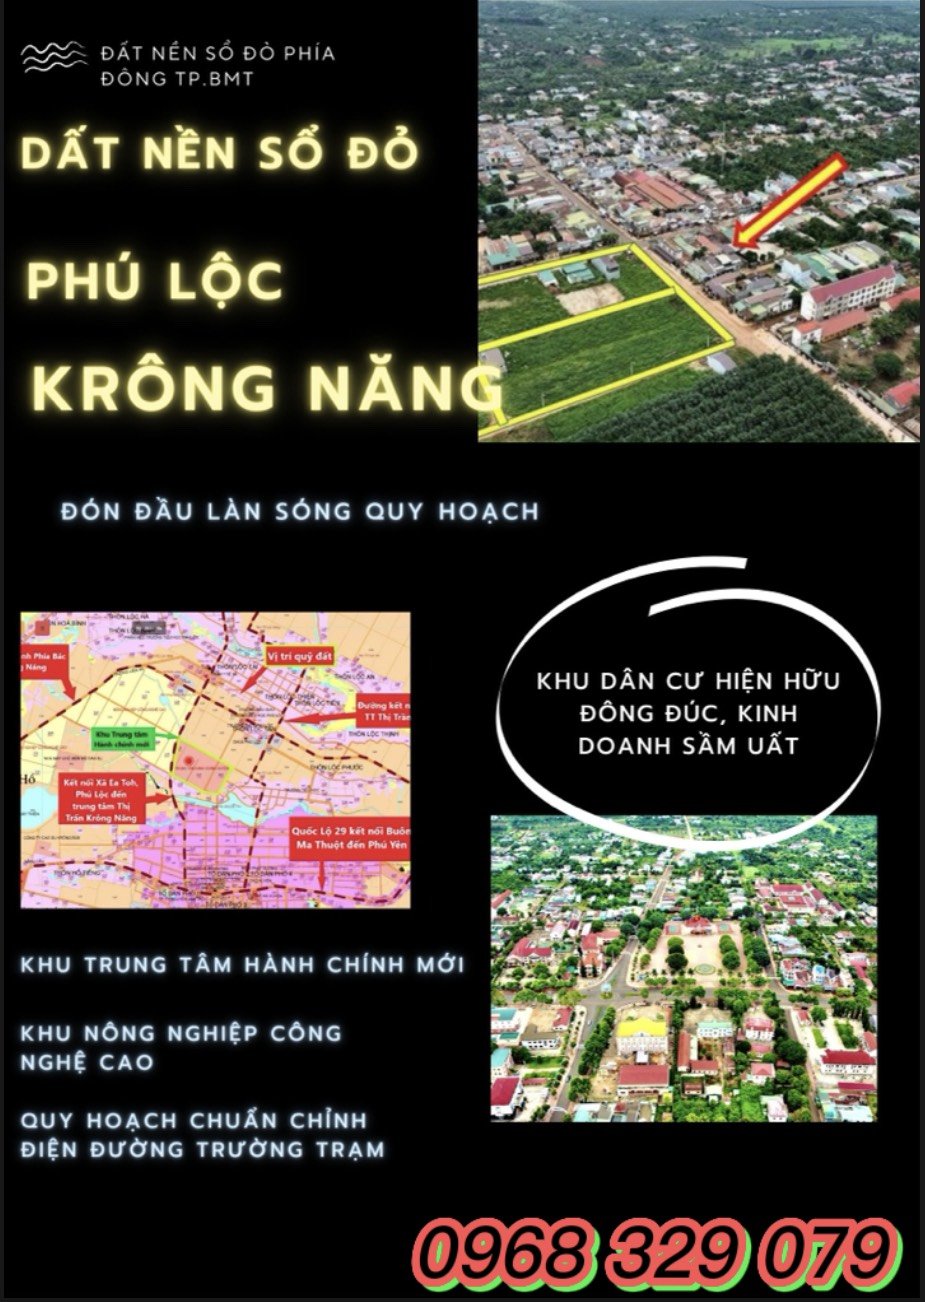 Cần bán Đất đường Quốc Lộ 29, Xã Phú Lộc, Diện tích 132m², Giá 900.000.000 Triệu